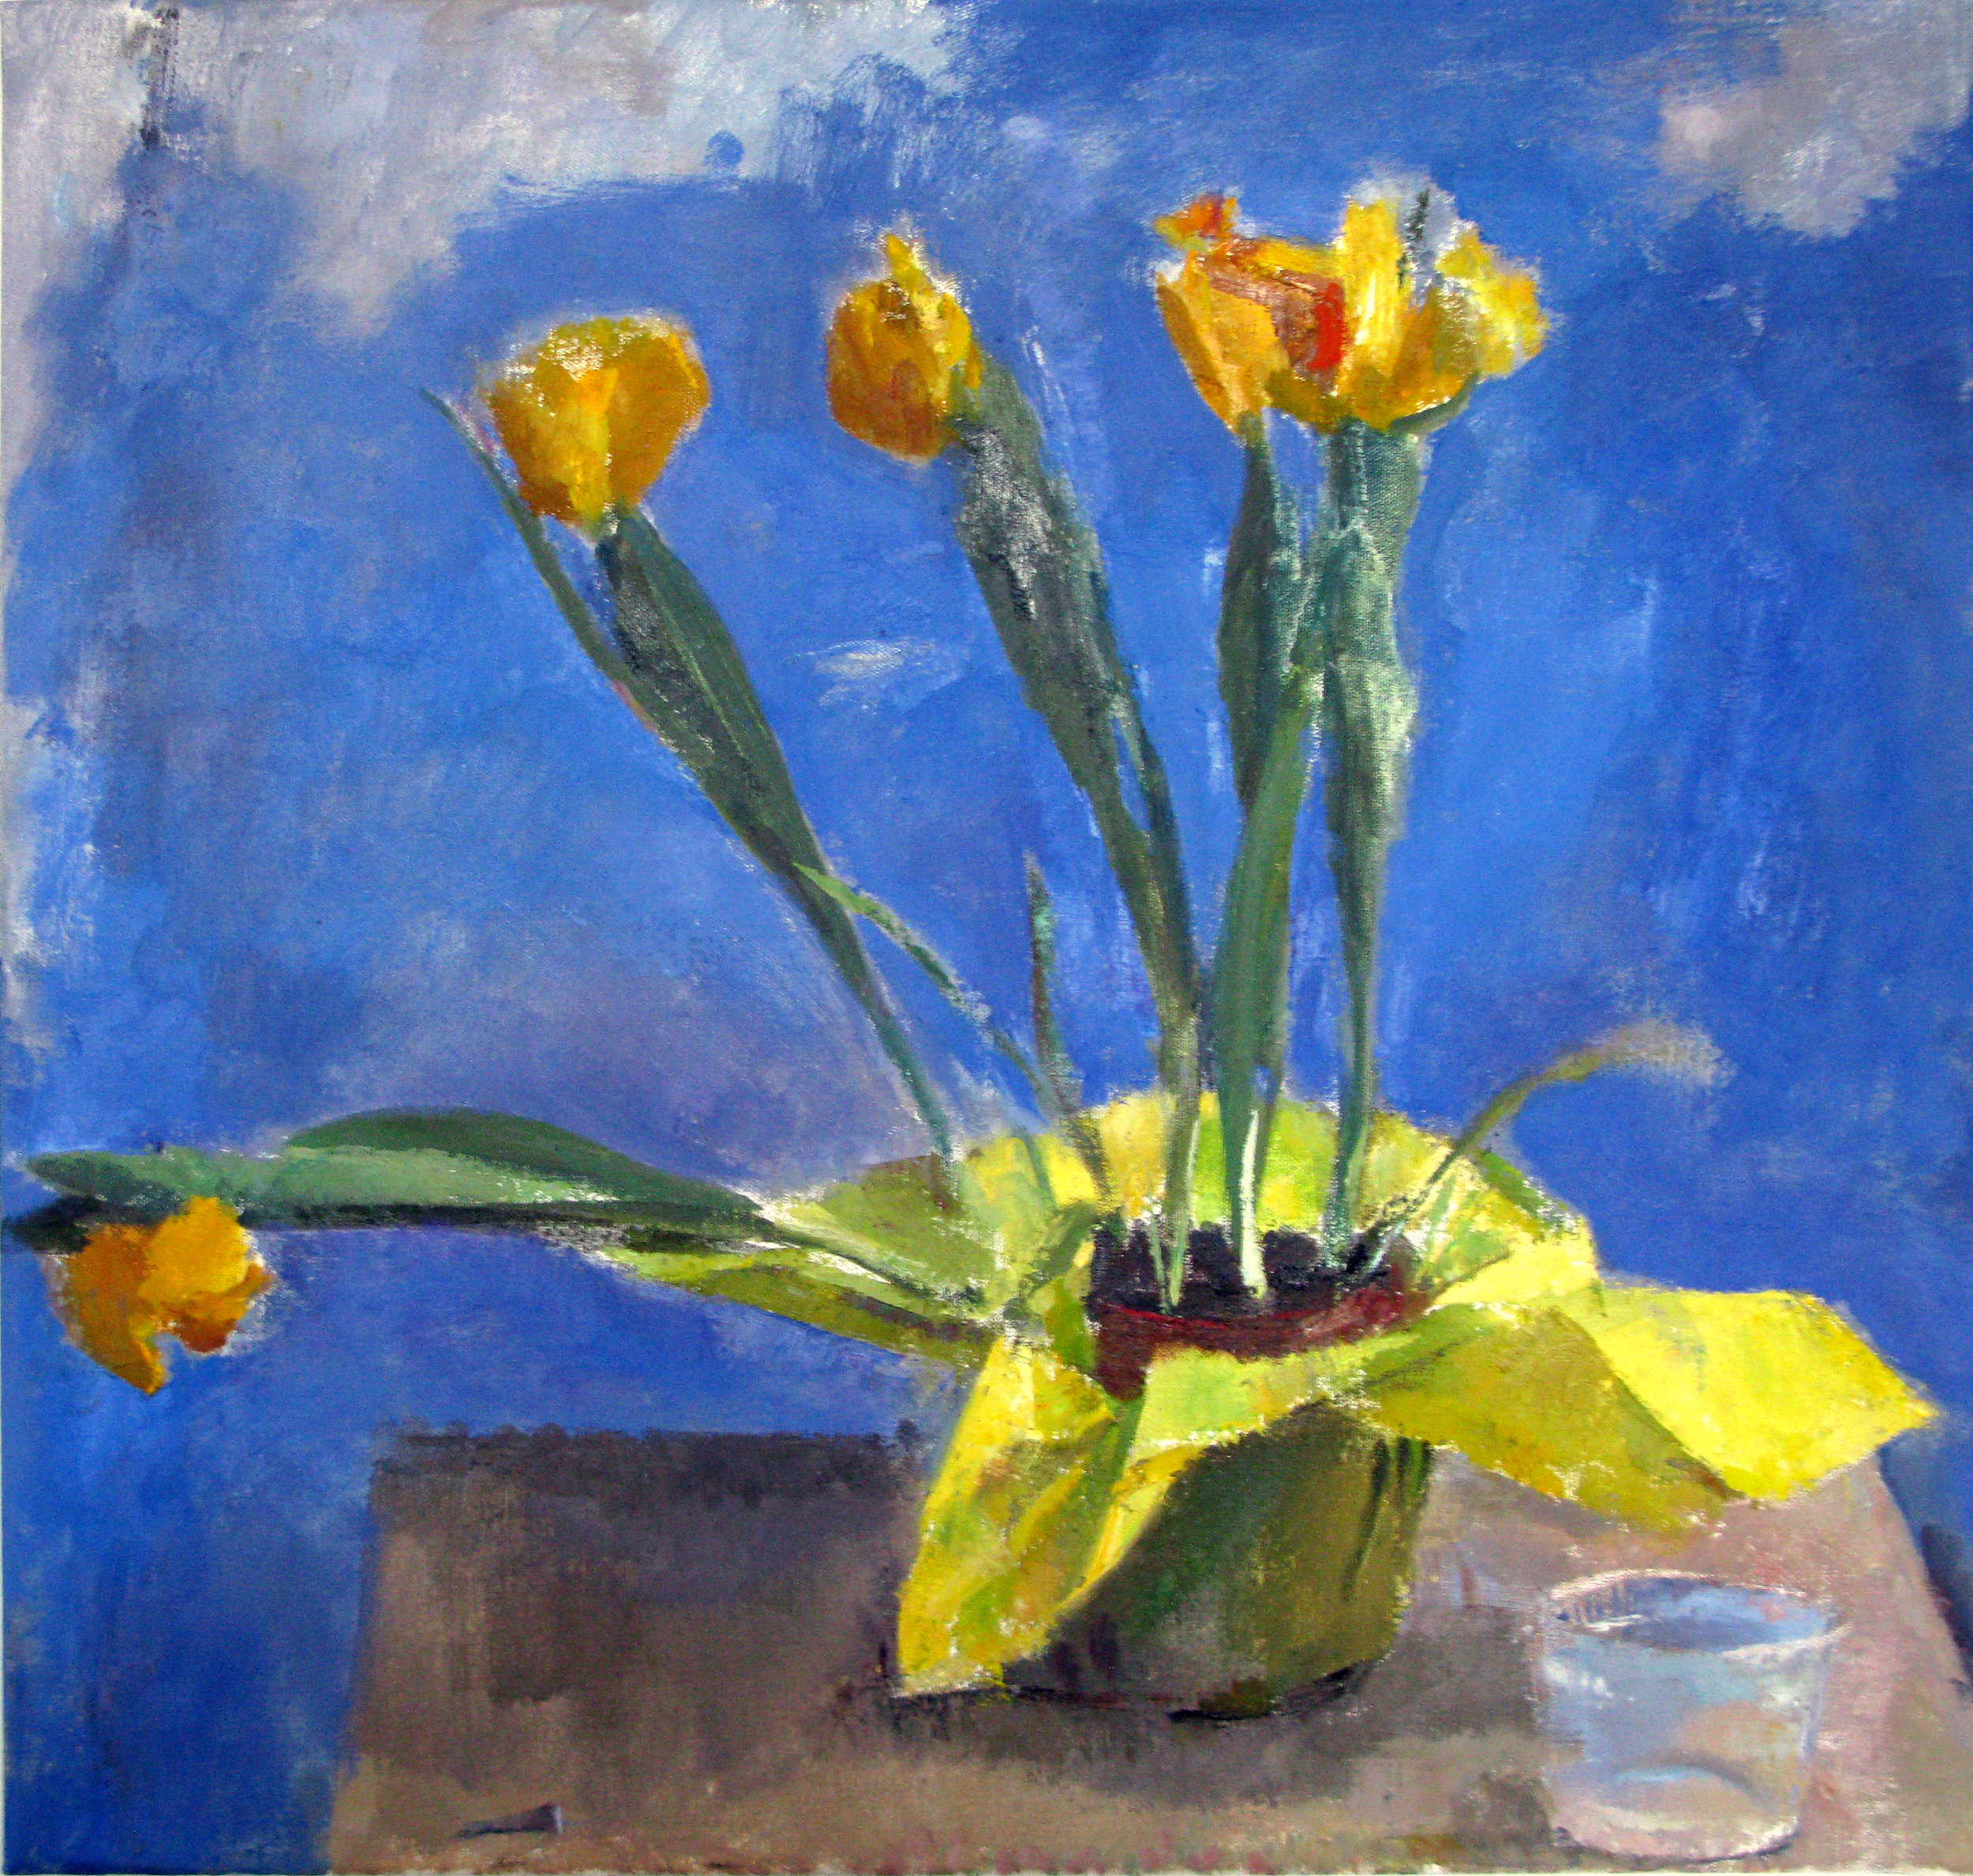 Yellow Tulips, 22" x 23", oil on linen, 2011.